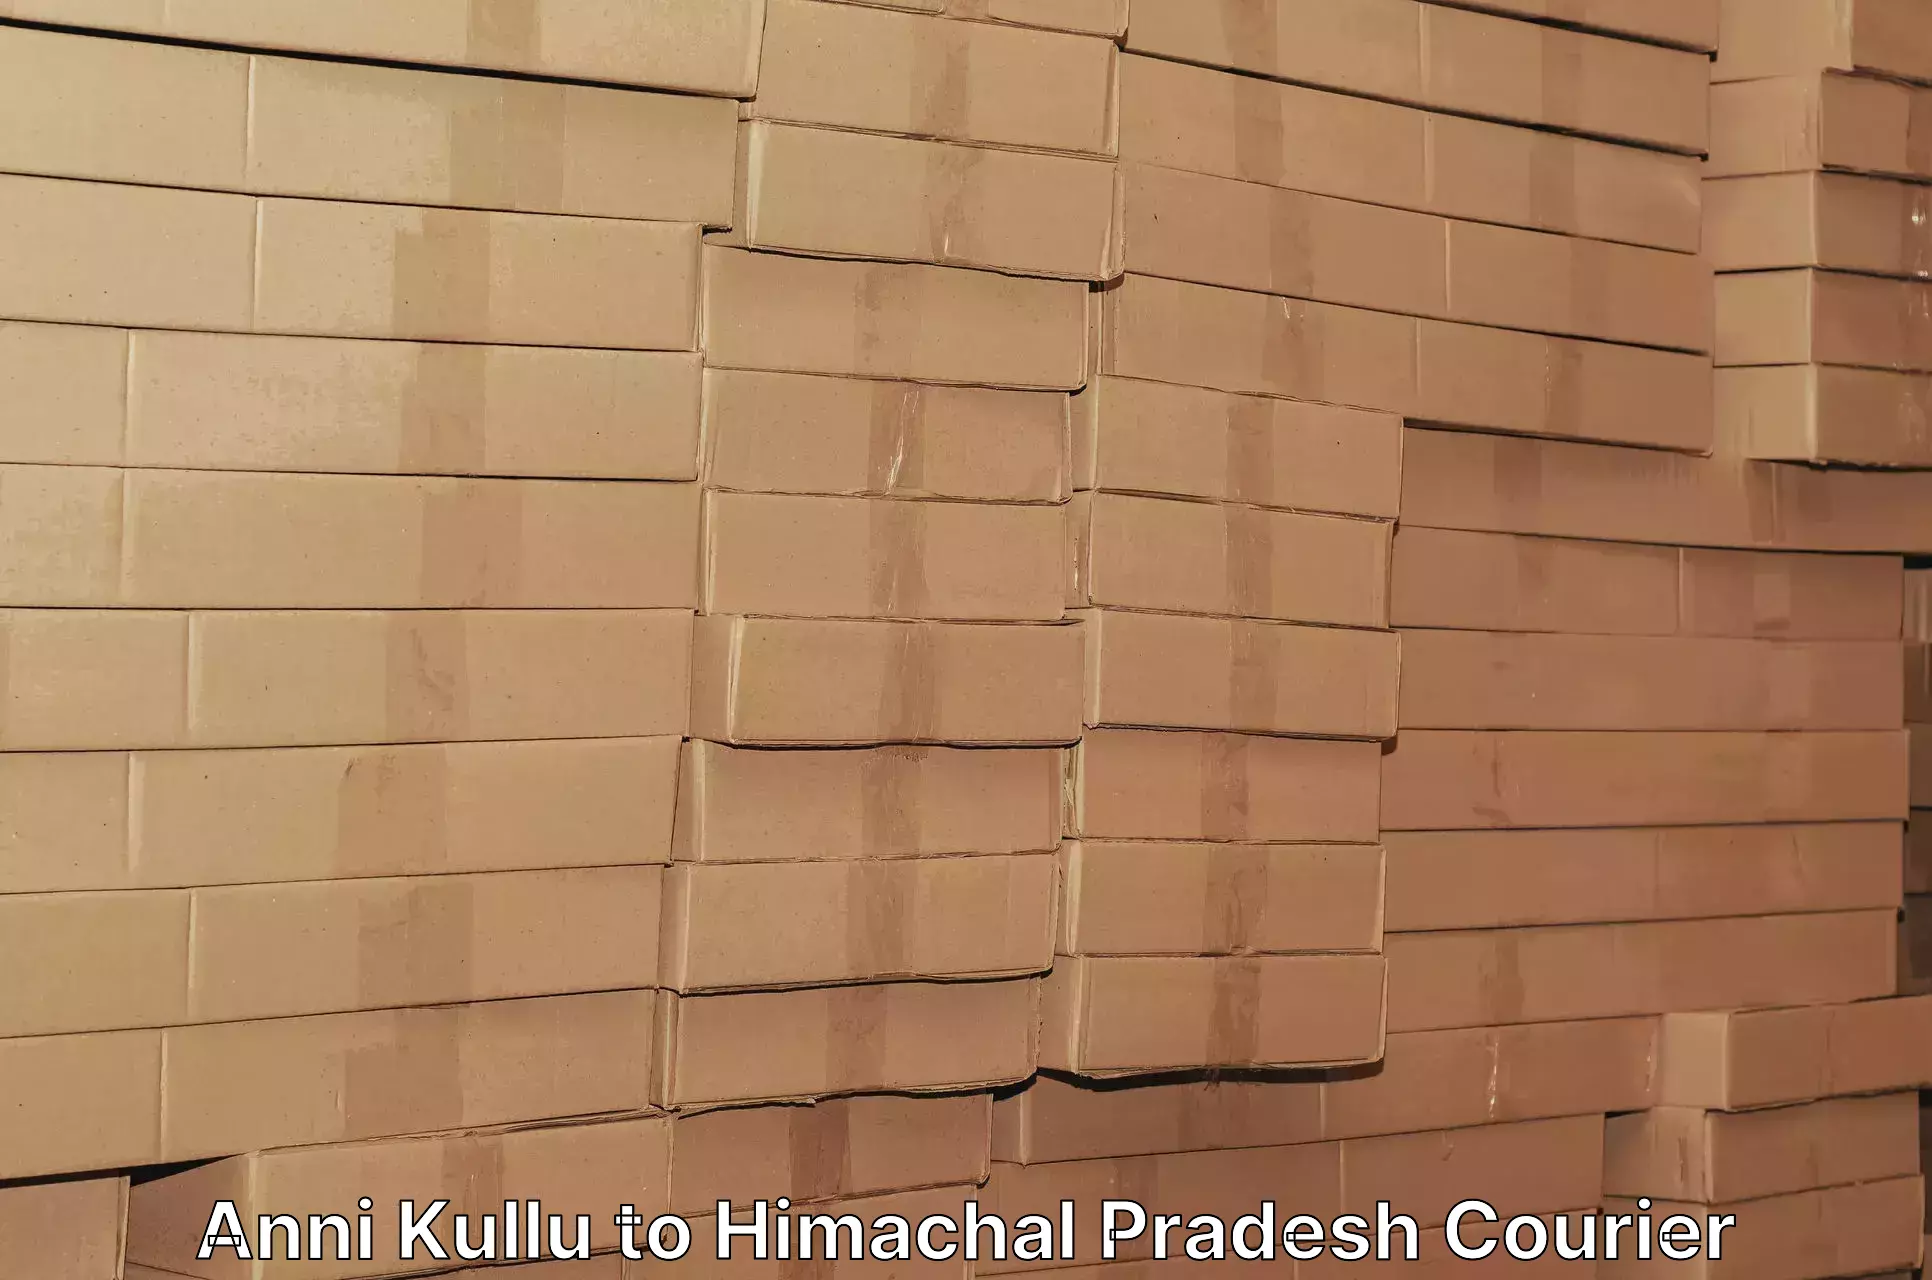 Door-to-door freight service Anni Kullu to Una Himachal Pradesh